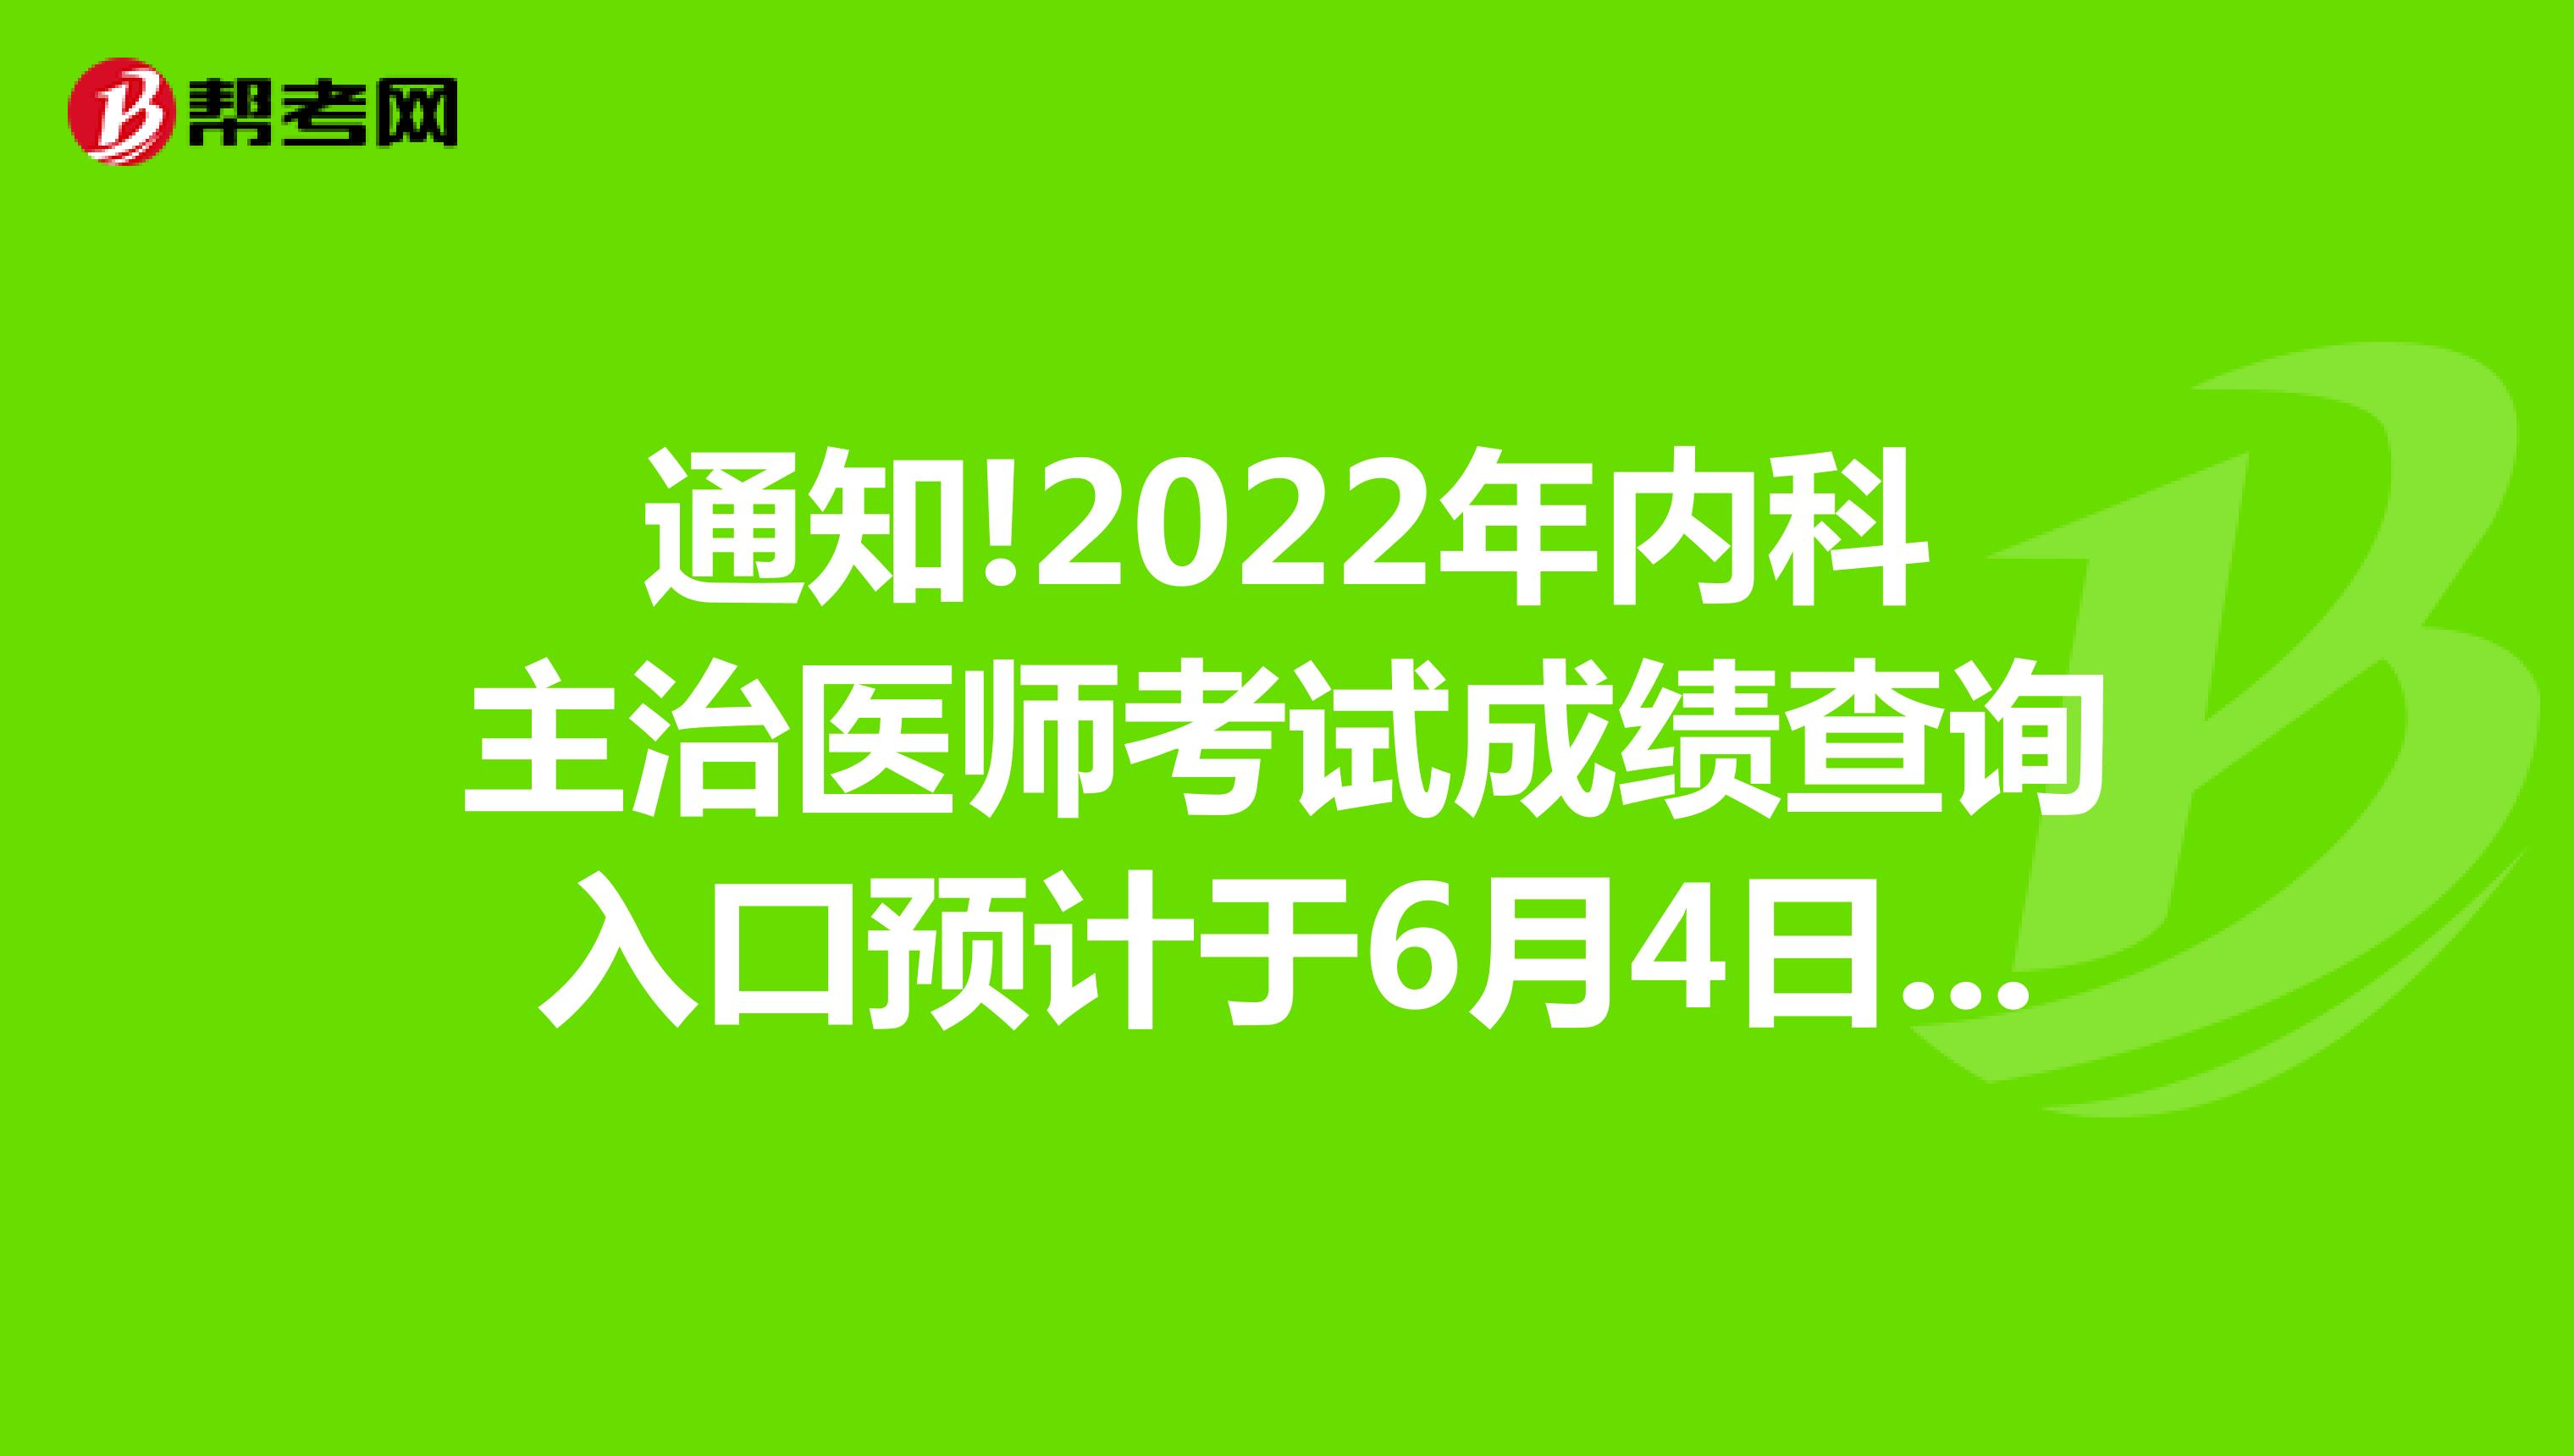 通知!2022年内科主治医师考试成绩查询入口预计于6月4日开通!